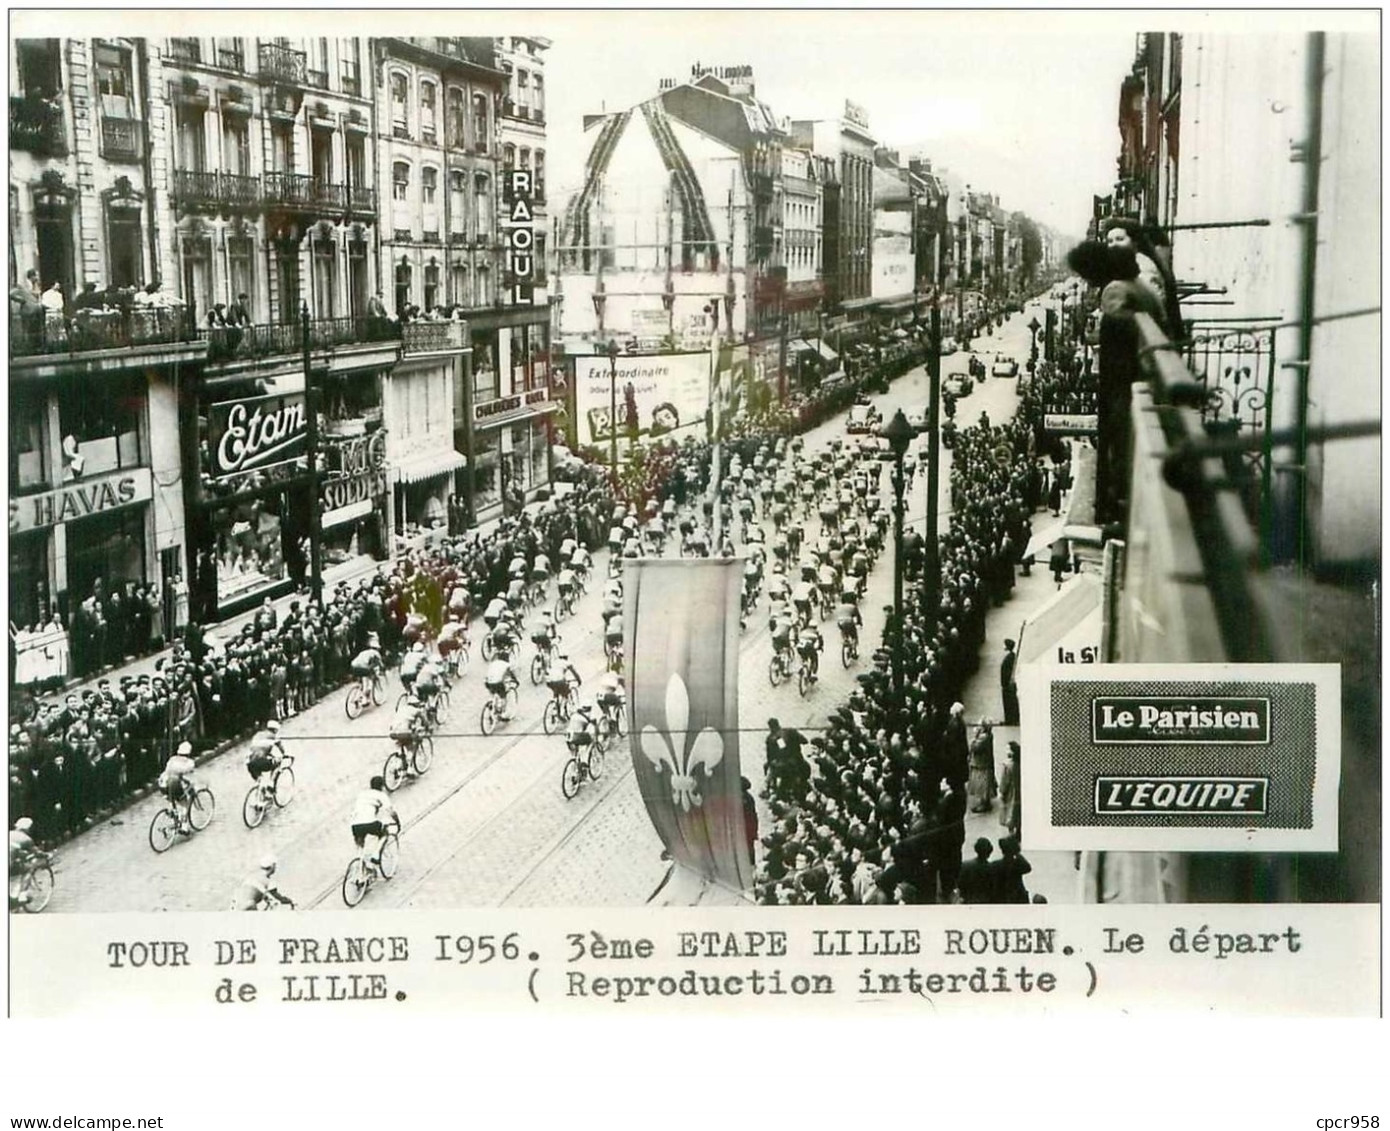 PHOTO DE PRESSE ORIGINALE TOUR DE FRANCE 1956.20X15.3eme ETAPE LILLE ROUEN.LE DEPART DE LILLE.n°18658 - Radsport